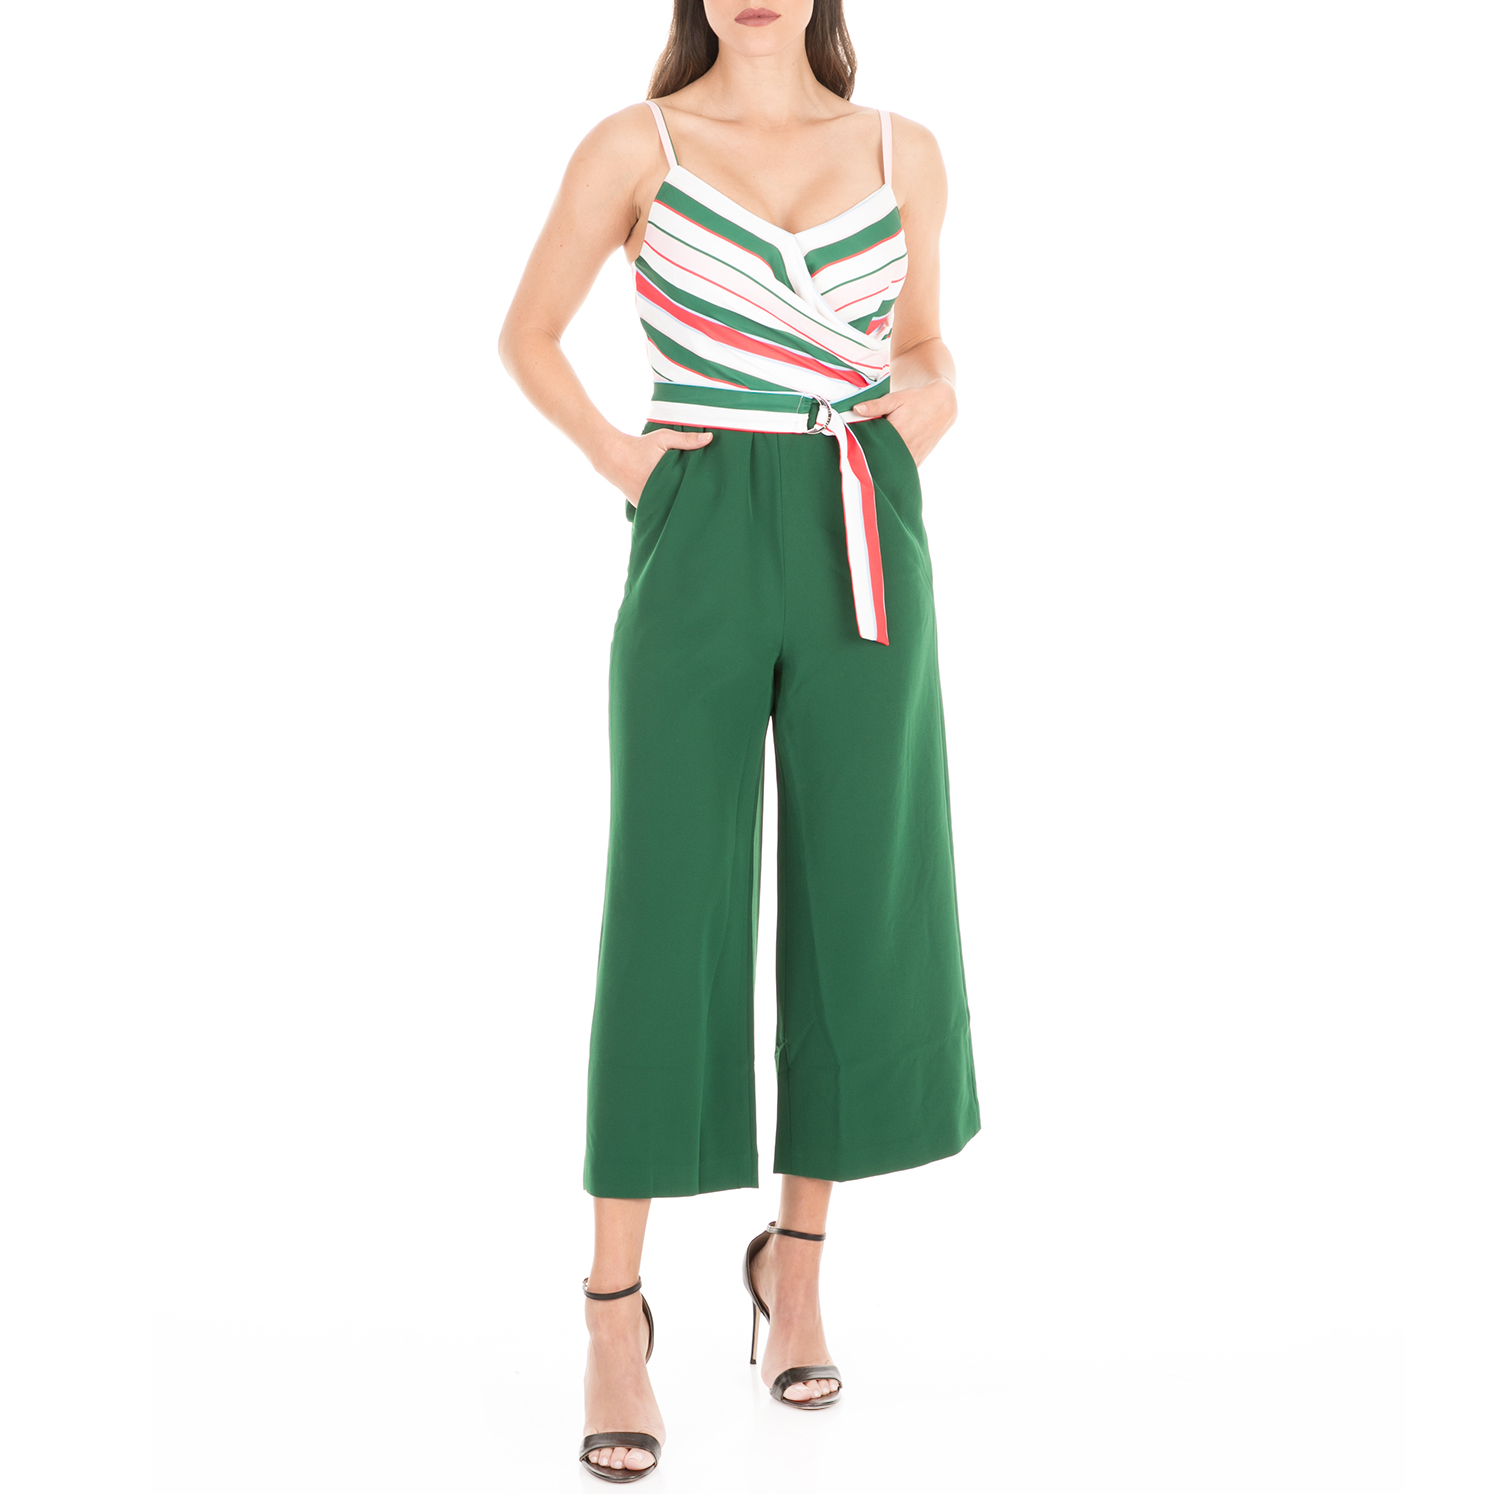 Γυναικεία/Ρούχα/Ολόσωμες Φόρμες TED BAKER - Γυναικεία ολόσωμη φόρμα TED BAKER JORDIN TUTTI FRUTTI πράσινη λευκή